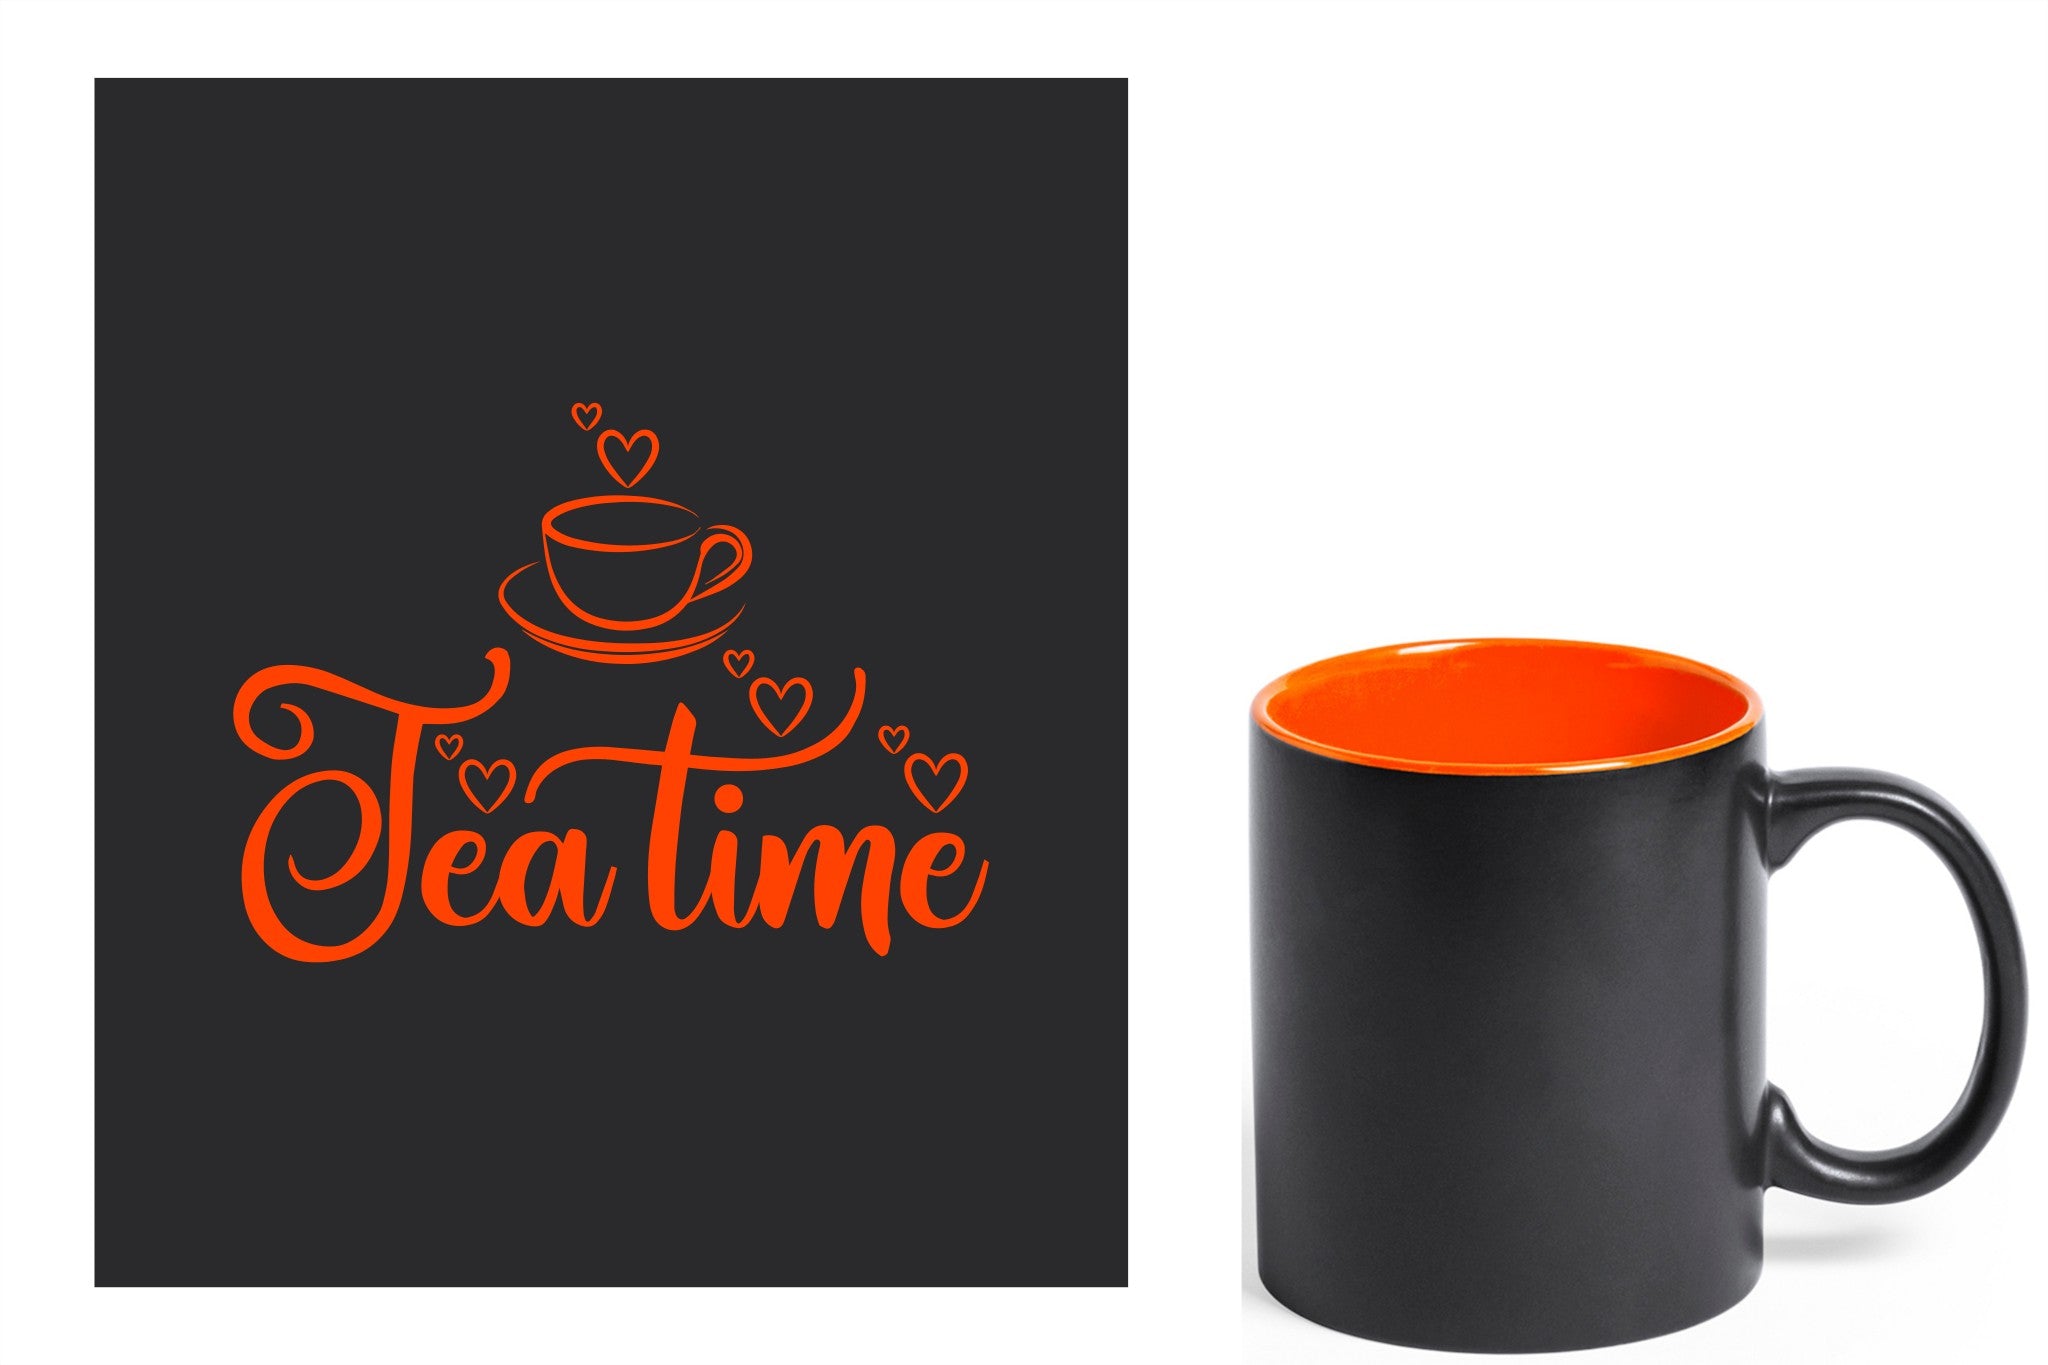 zwarte keramische mok met oranje gravure  'tea time'.